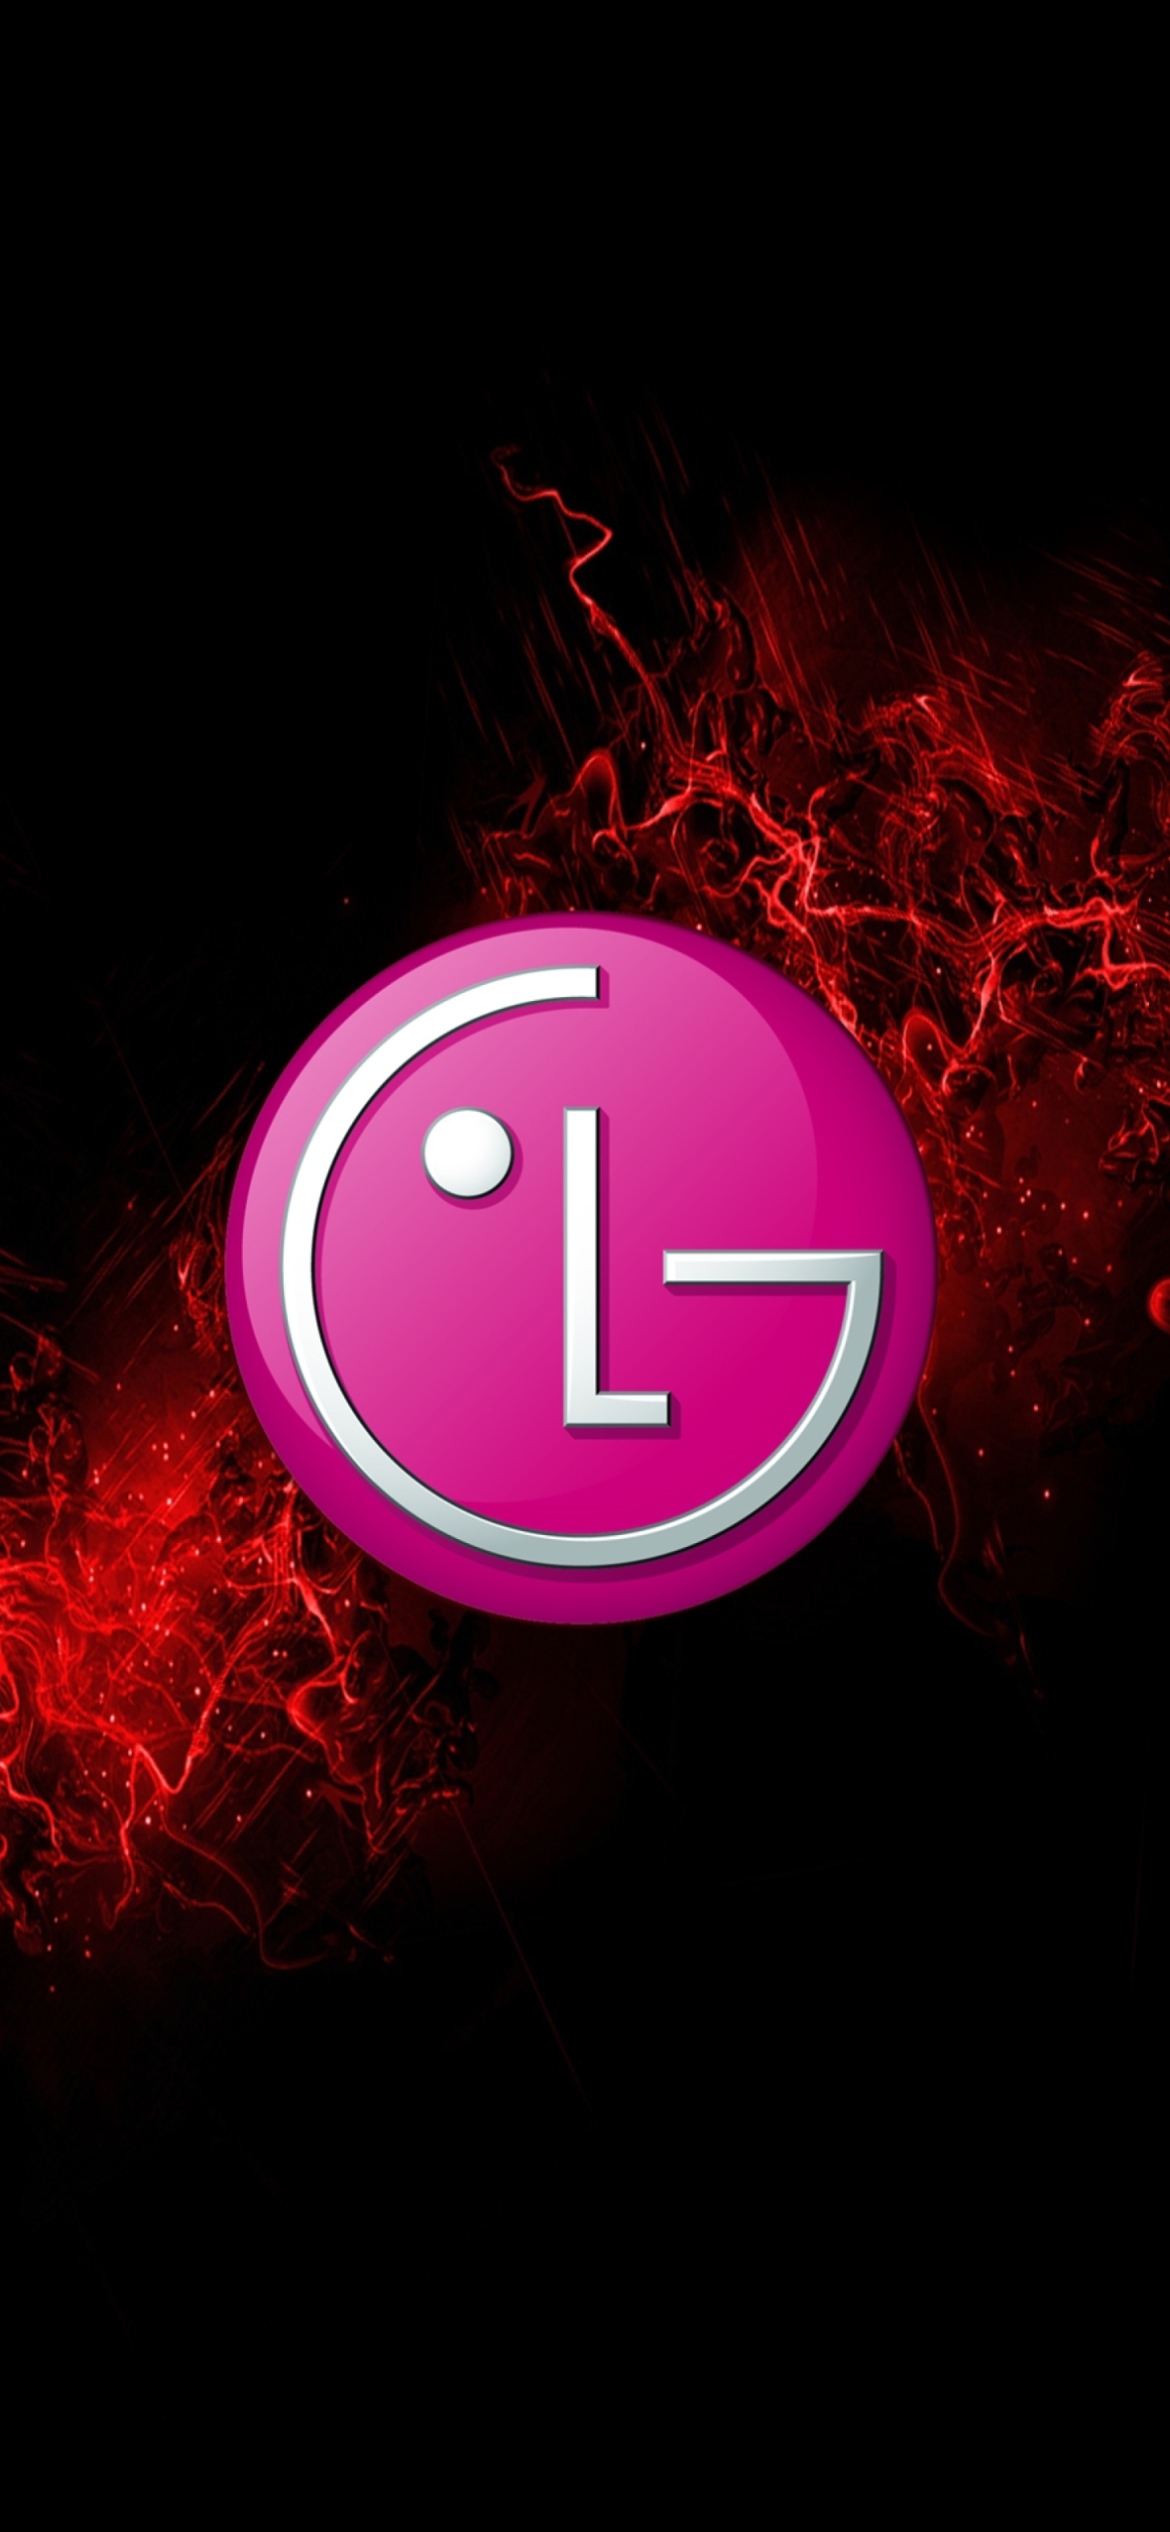 Обои Lg Logo 1170x2532